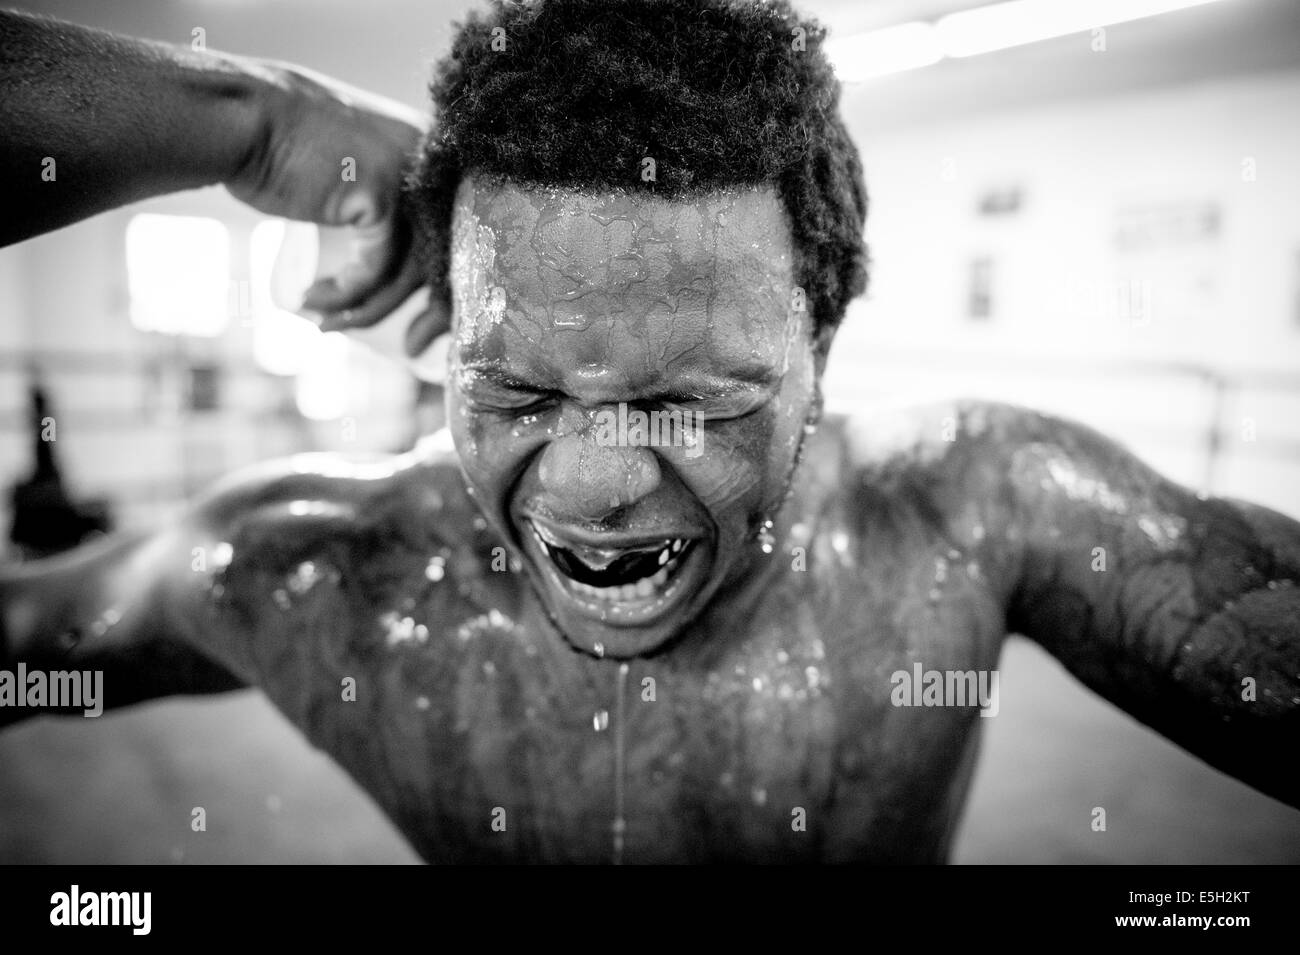 Verse de l'eau en bas de la face de Stephon "Le chirurgien" Morris au cours d'une session d'entraînement à UMAR Club de boxe Baltimore, Md., juin Banque D'Images